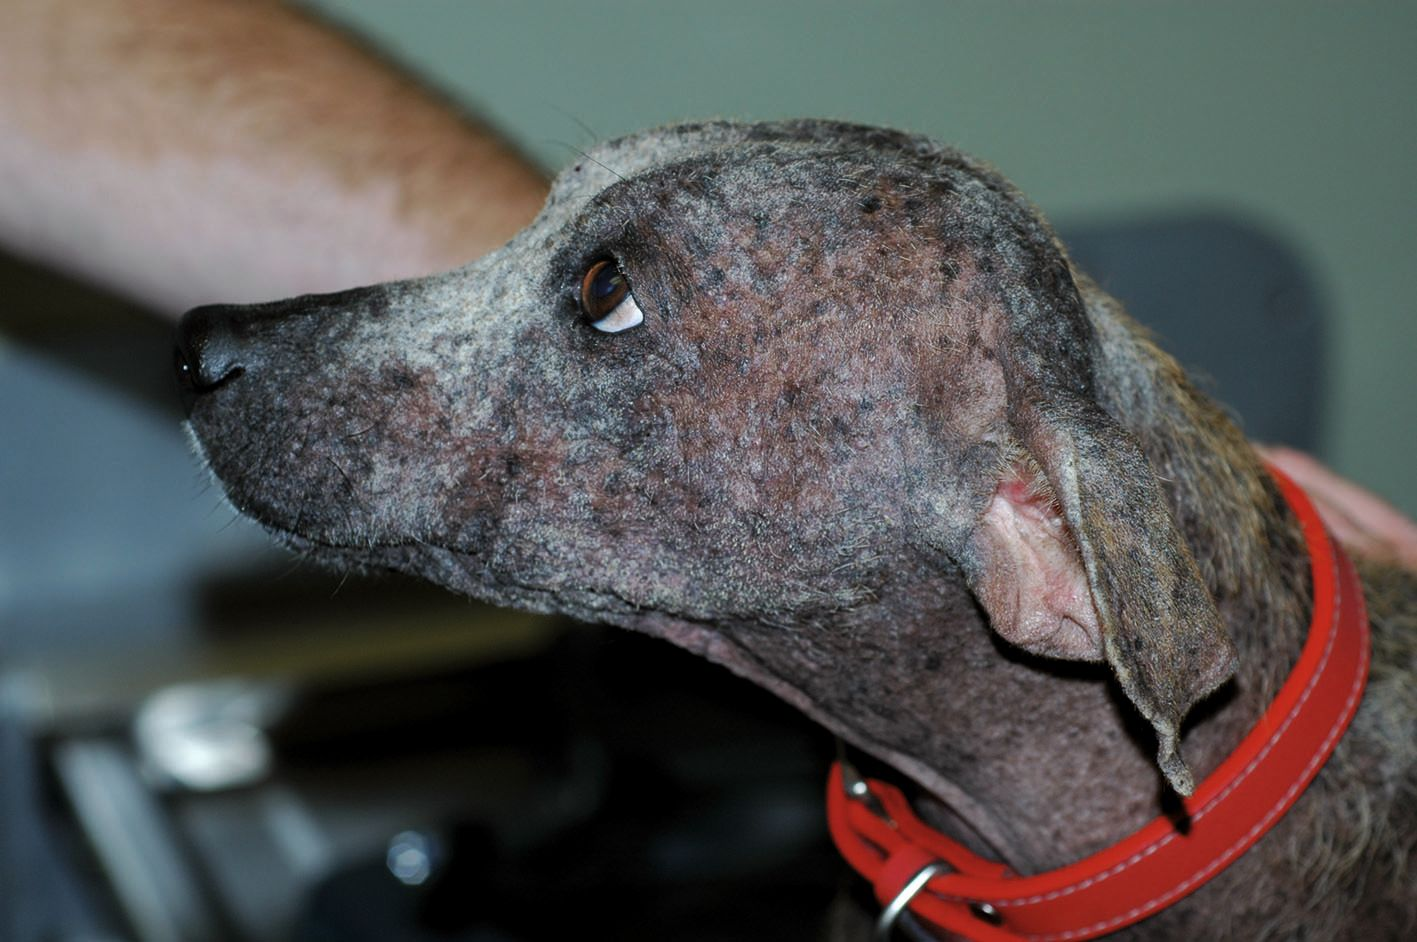 Generalisierte Demodikose vor Behandlung. Dieser Fundhund wurde erfolgreich gegen Demodikose behandelt und lebt heute ein glückliches, gesundes Leben